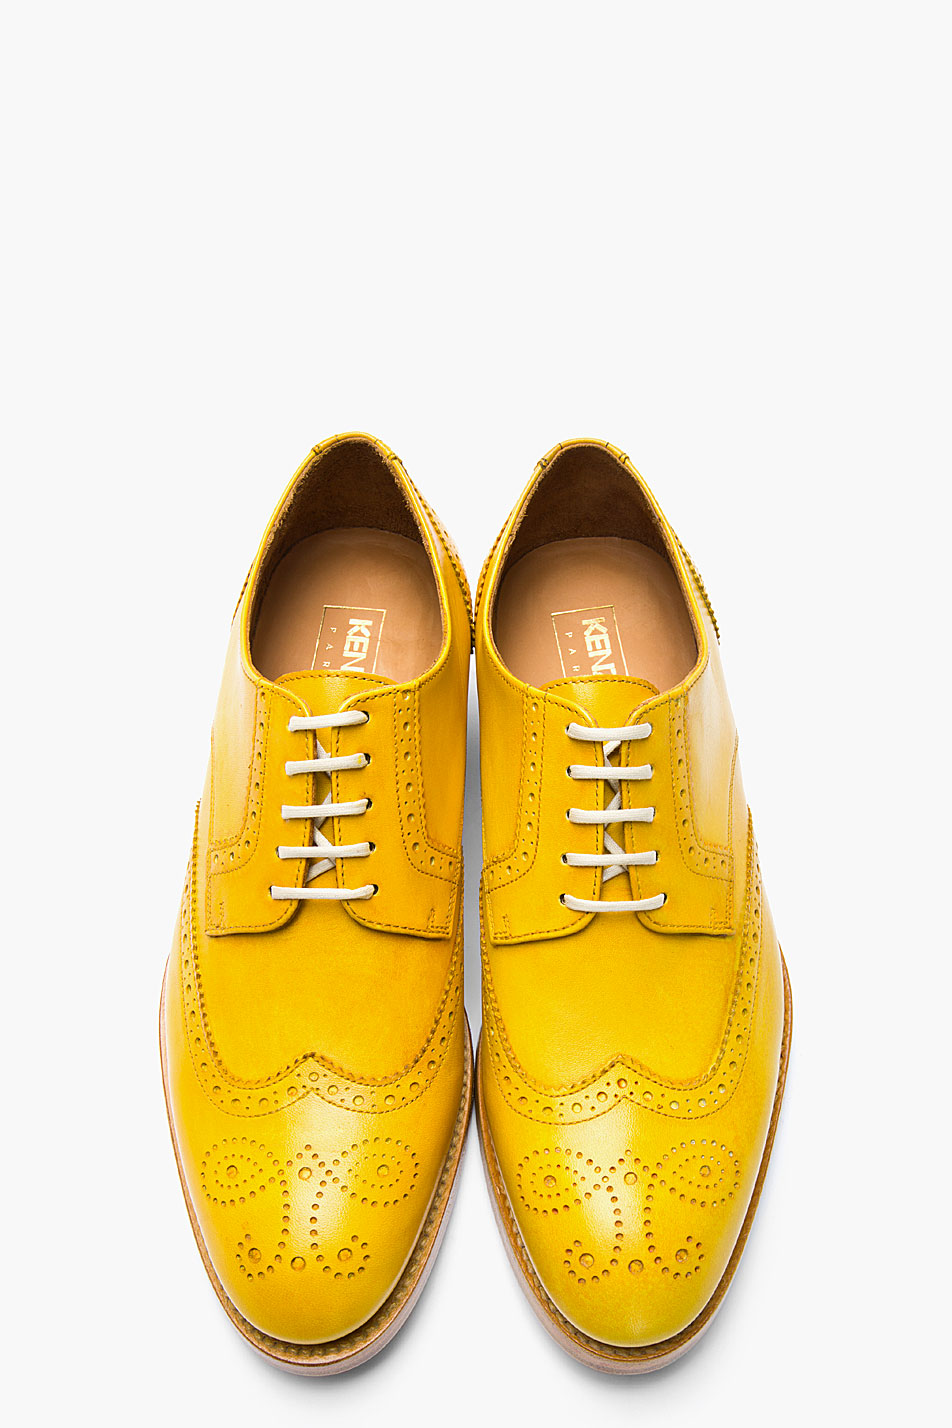 KENZO Mustard Yellow Leather Elliott Wingtip Brogues in Metallic for Men |  Lyst